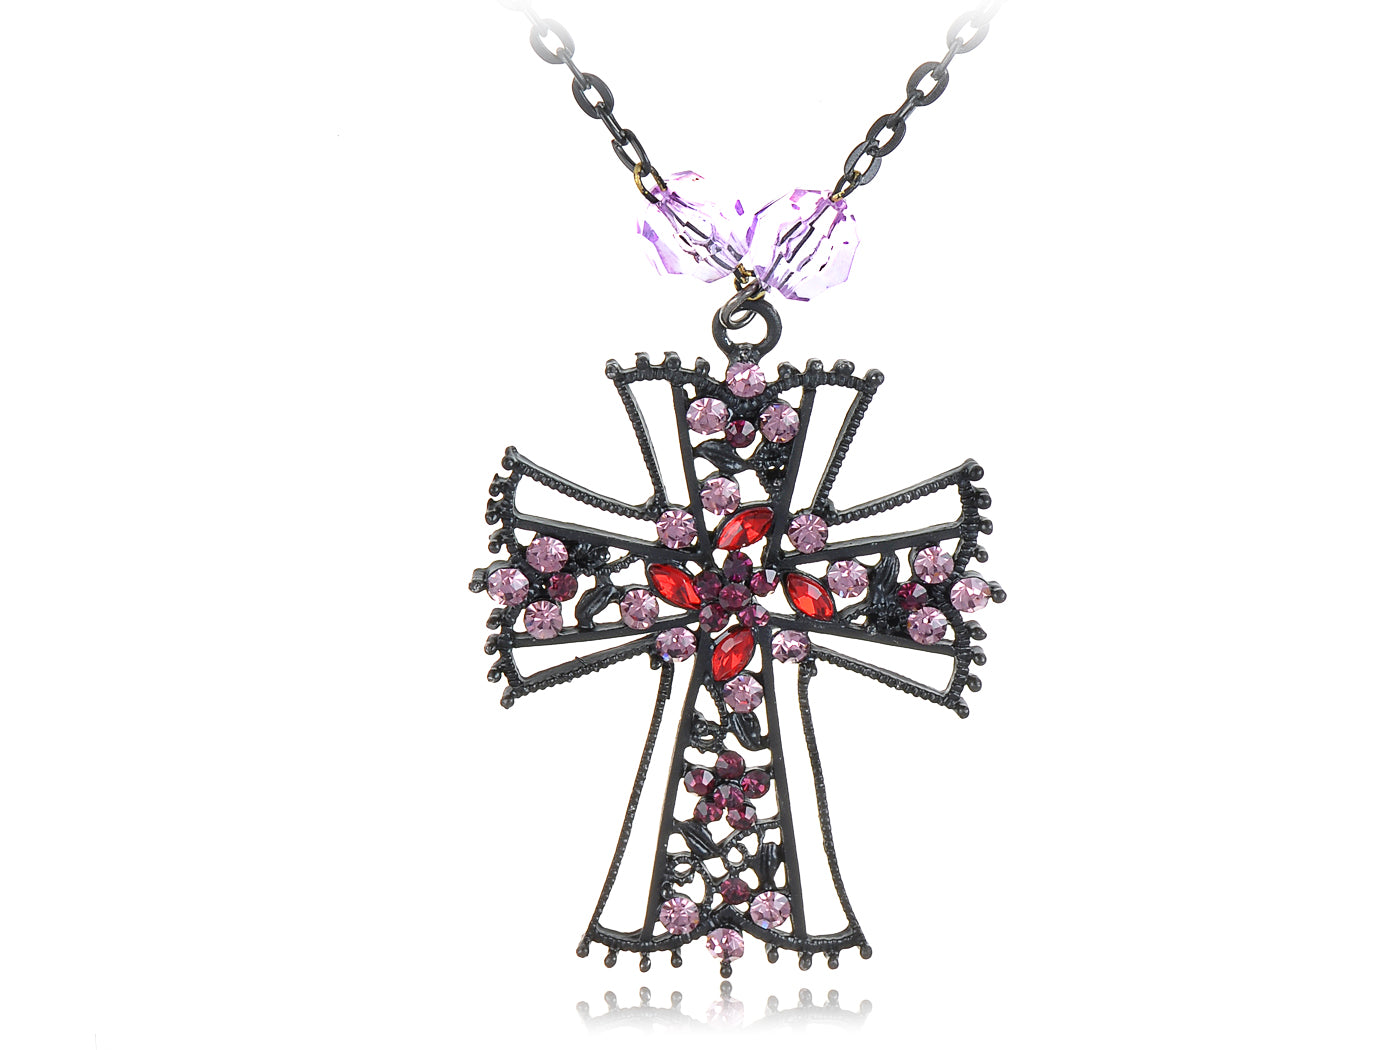 Black Gothic Pink Purple Vintage Necklace Pendant